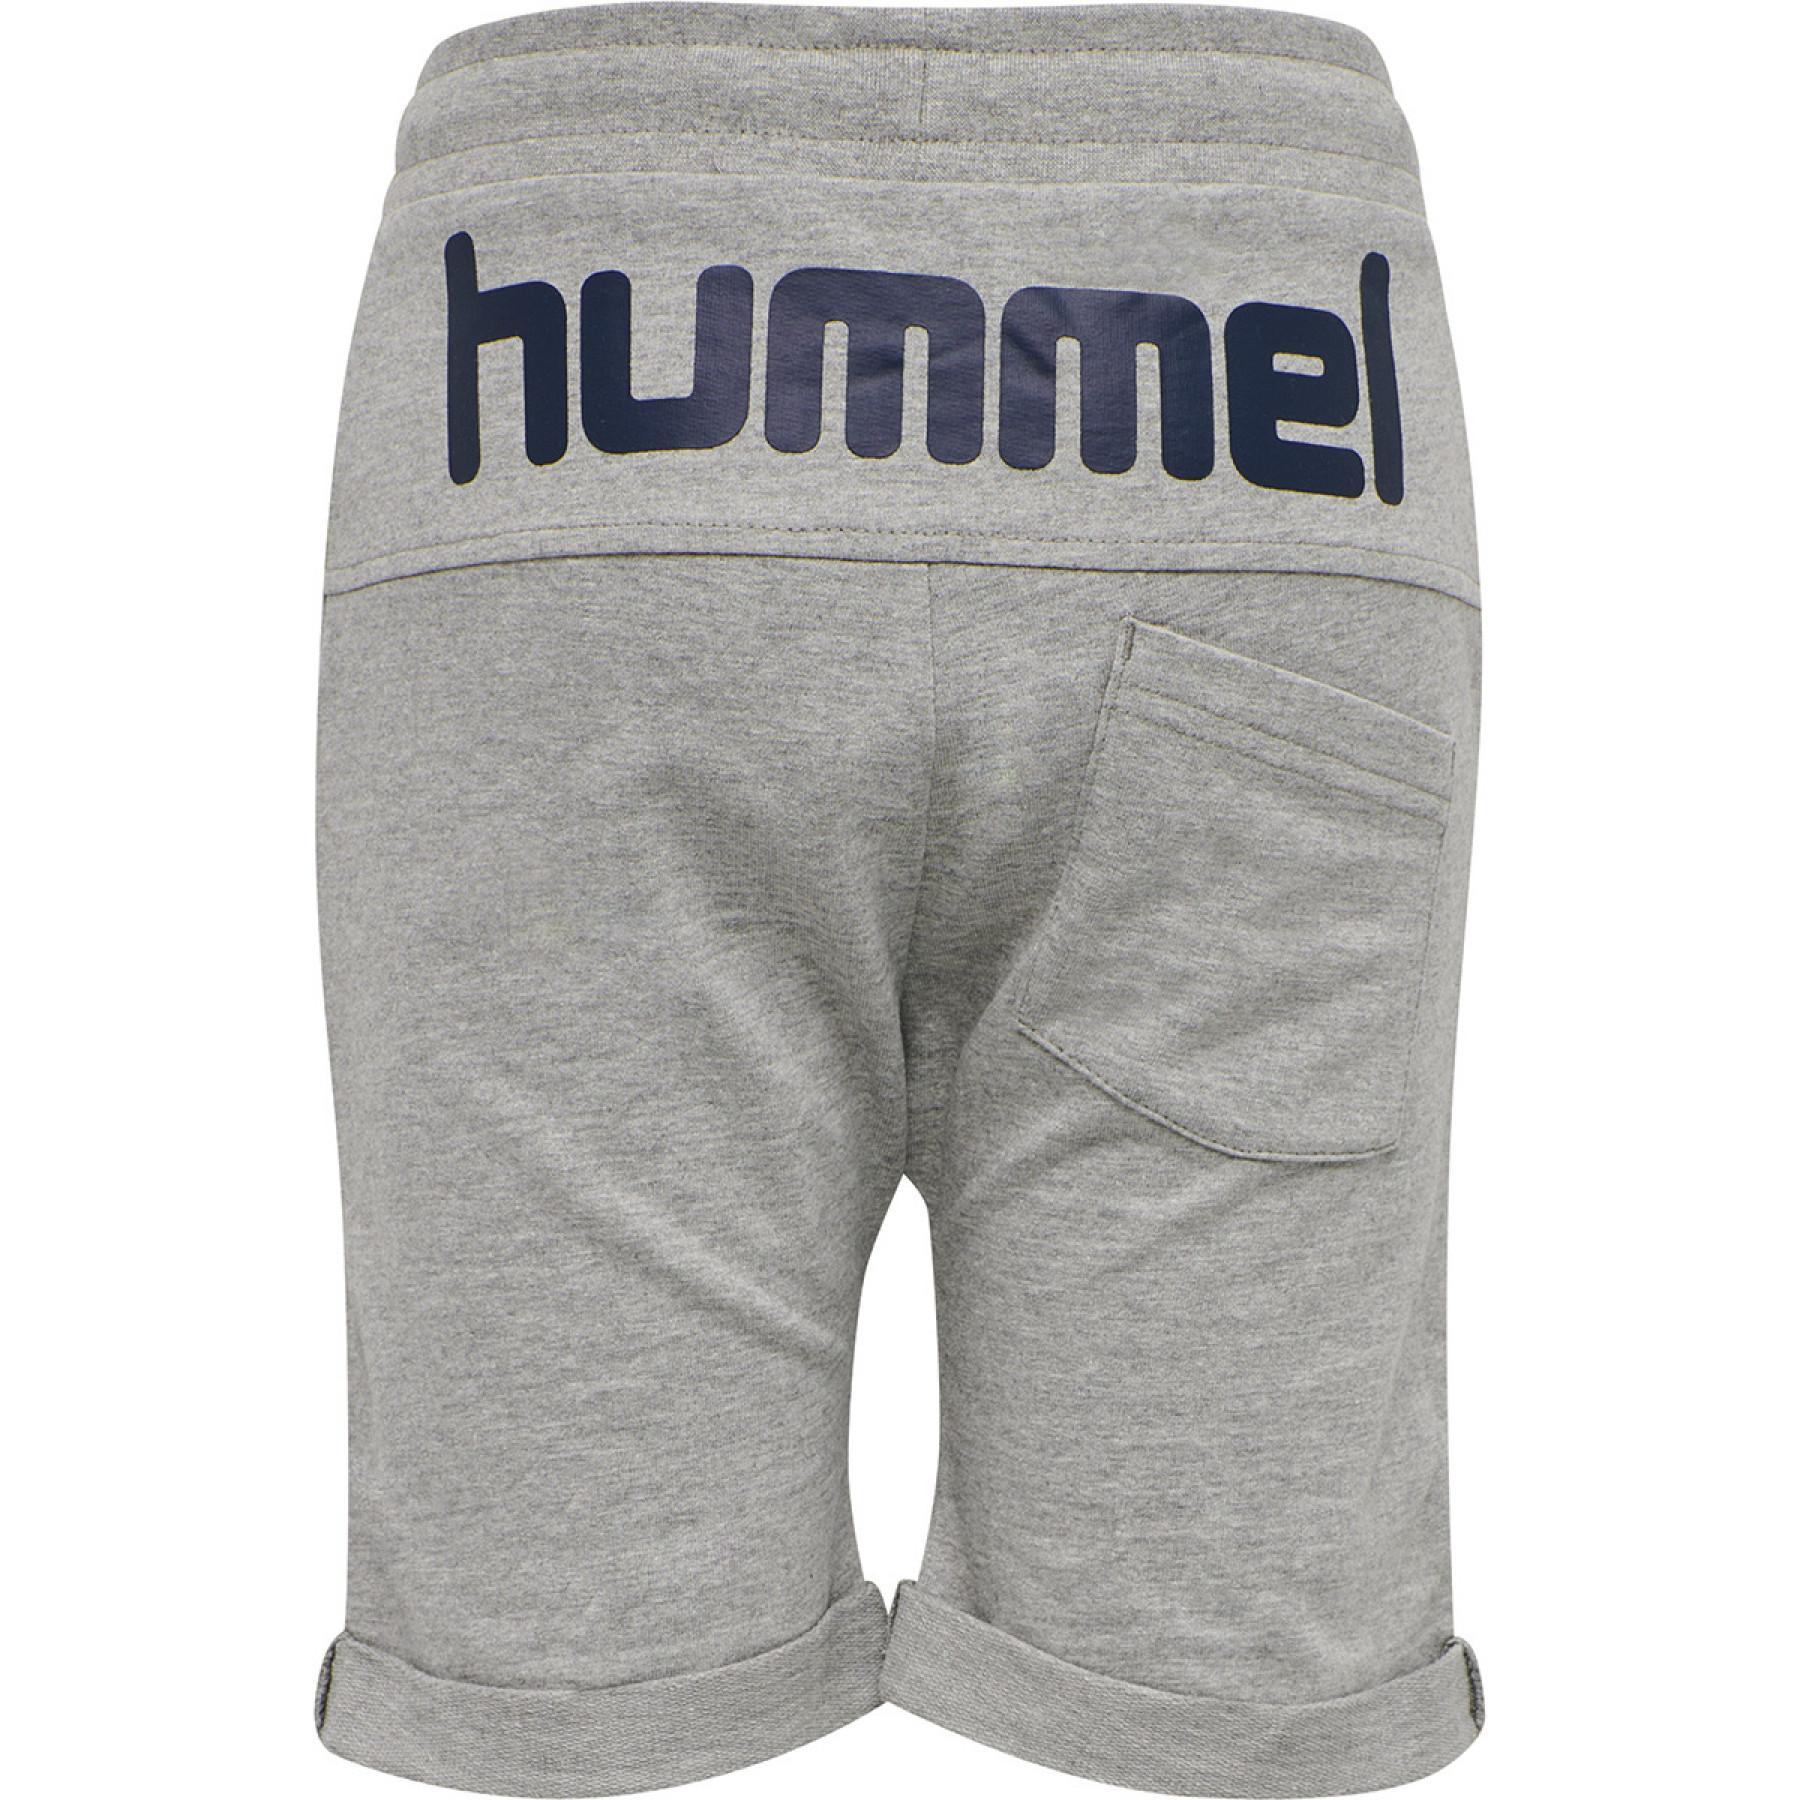 Children's shorts Hummel hmlflicker